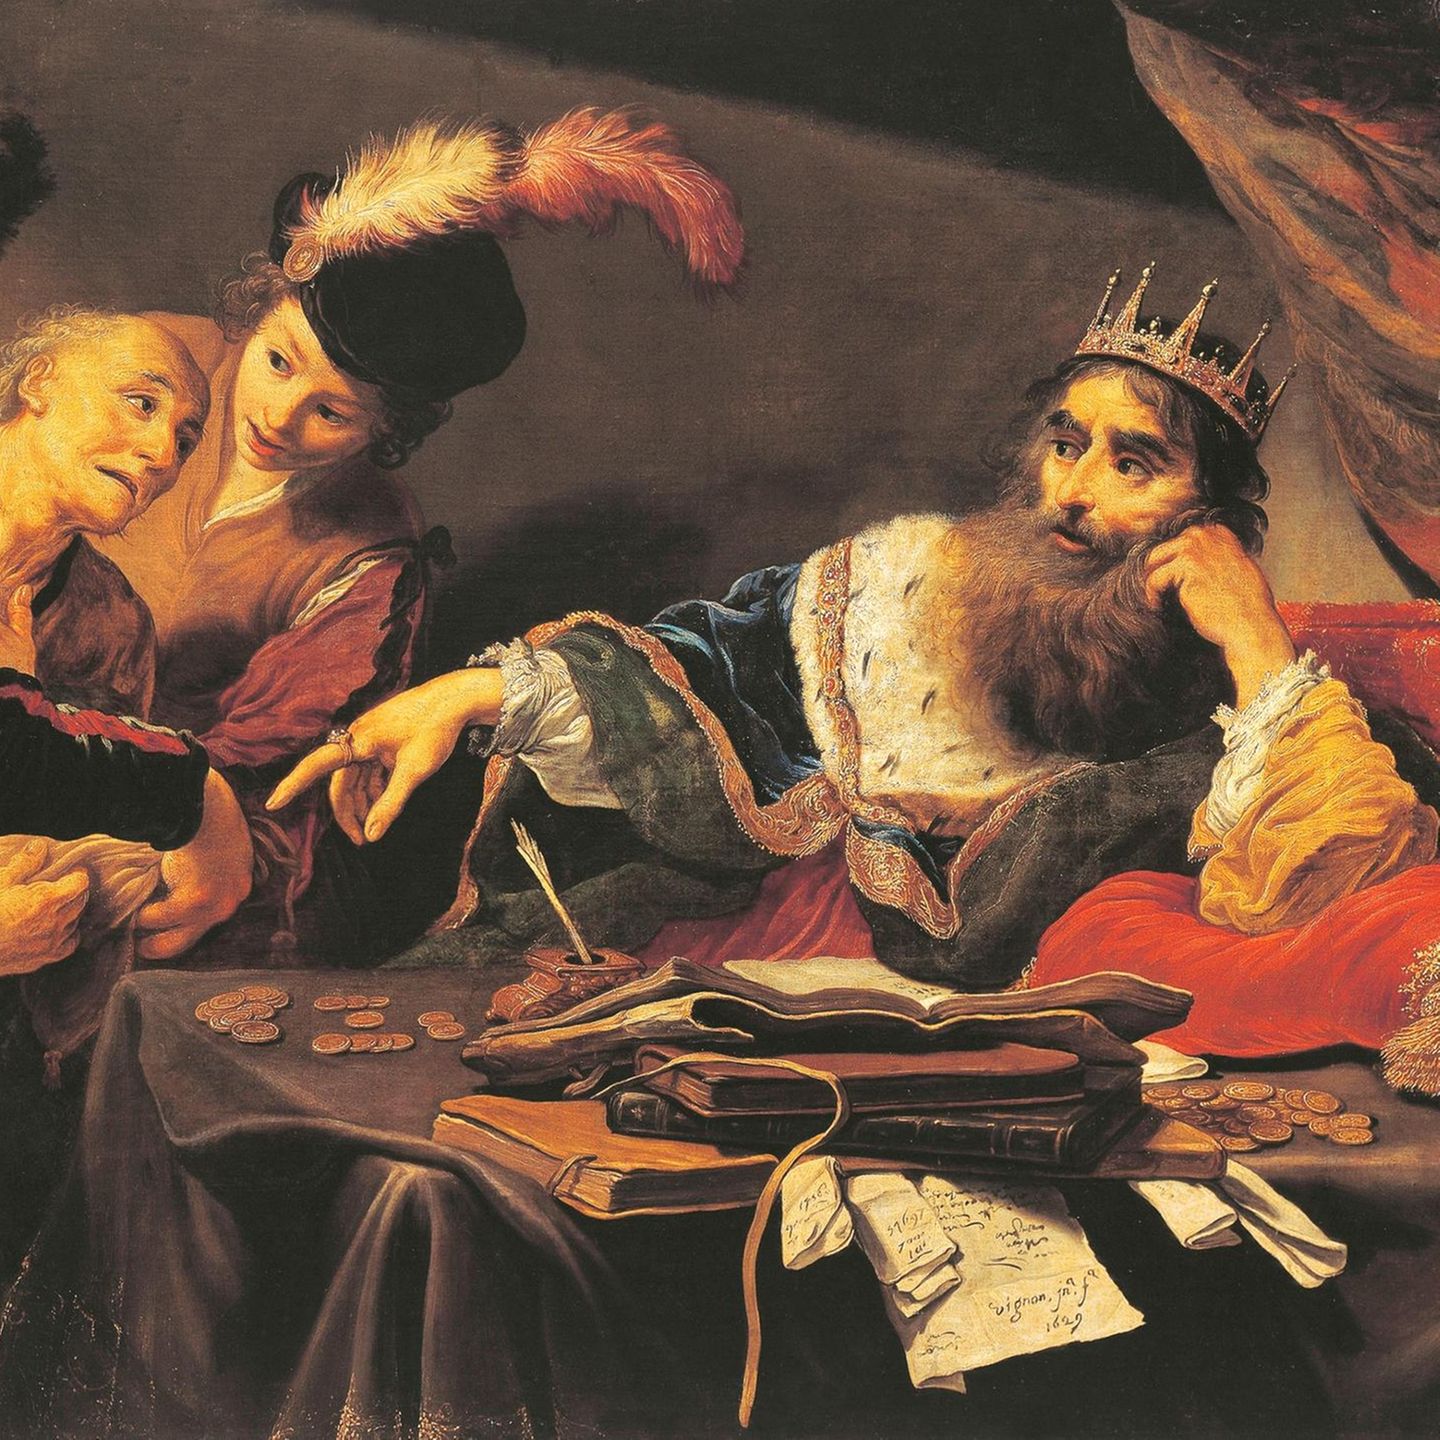 Krösus empfängt Tribut: Der König Lydiens gilt als Erfinder von Münzen – die er hier ungerührt entgegennimmt (Ölgemälde von Claude Vignon, 1593-1670)